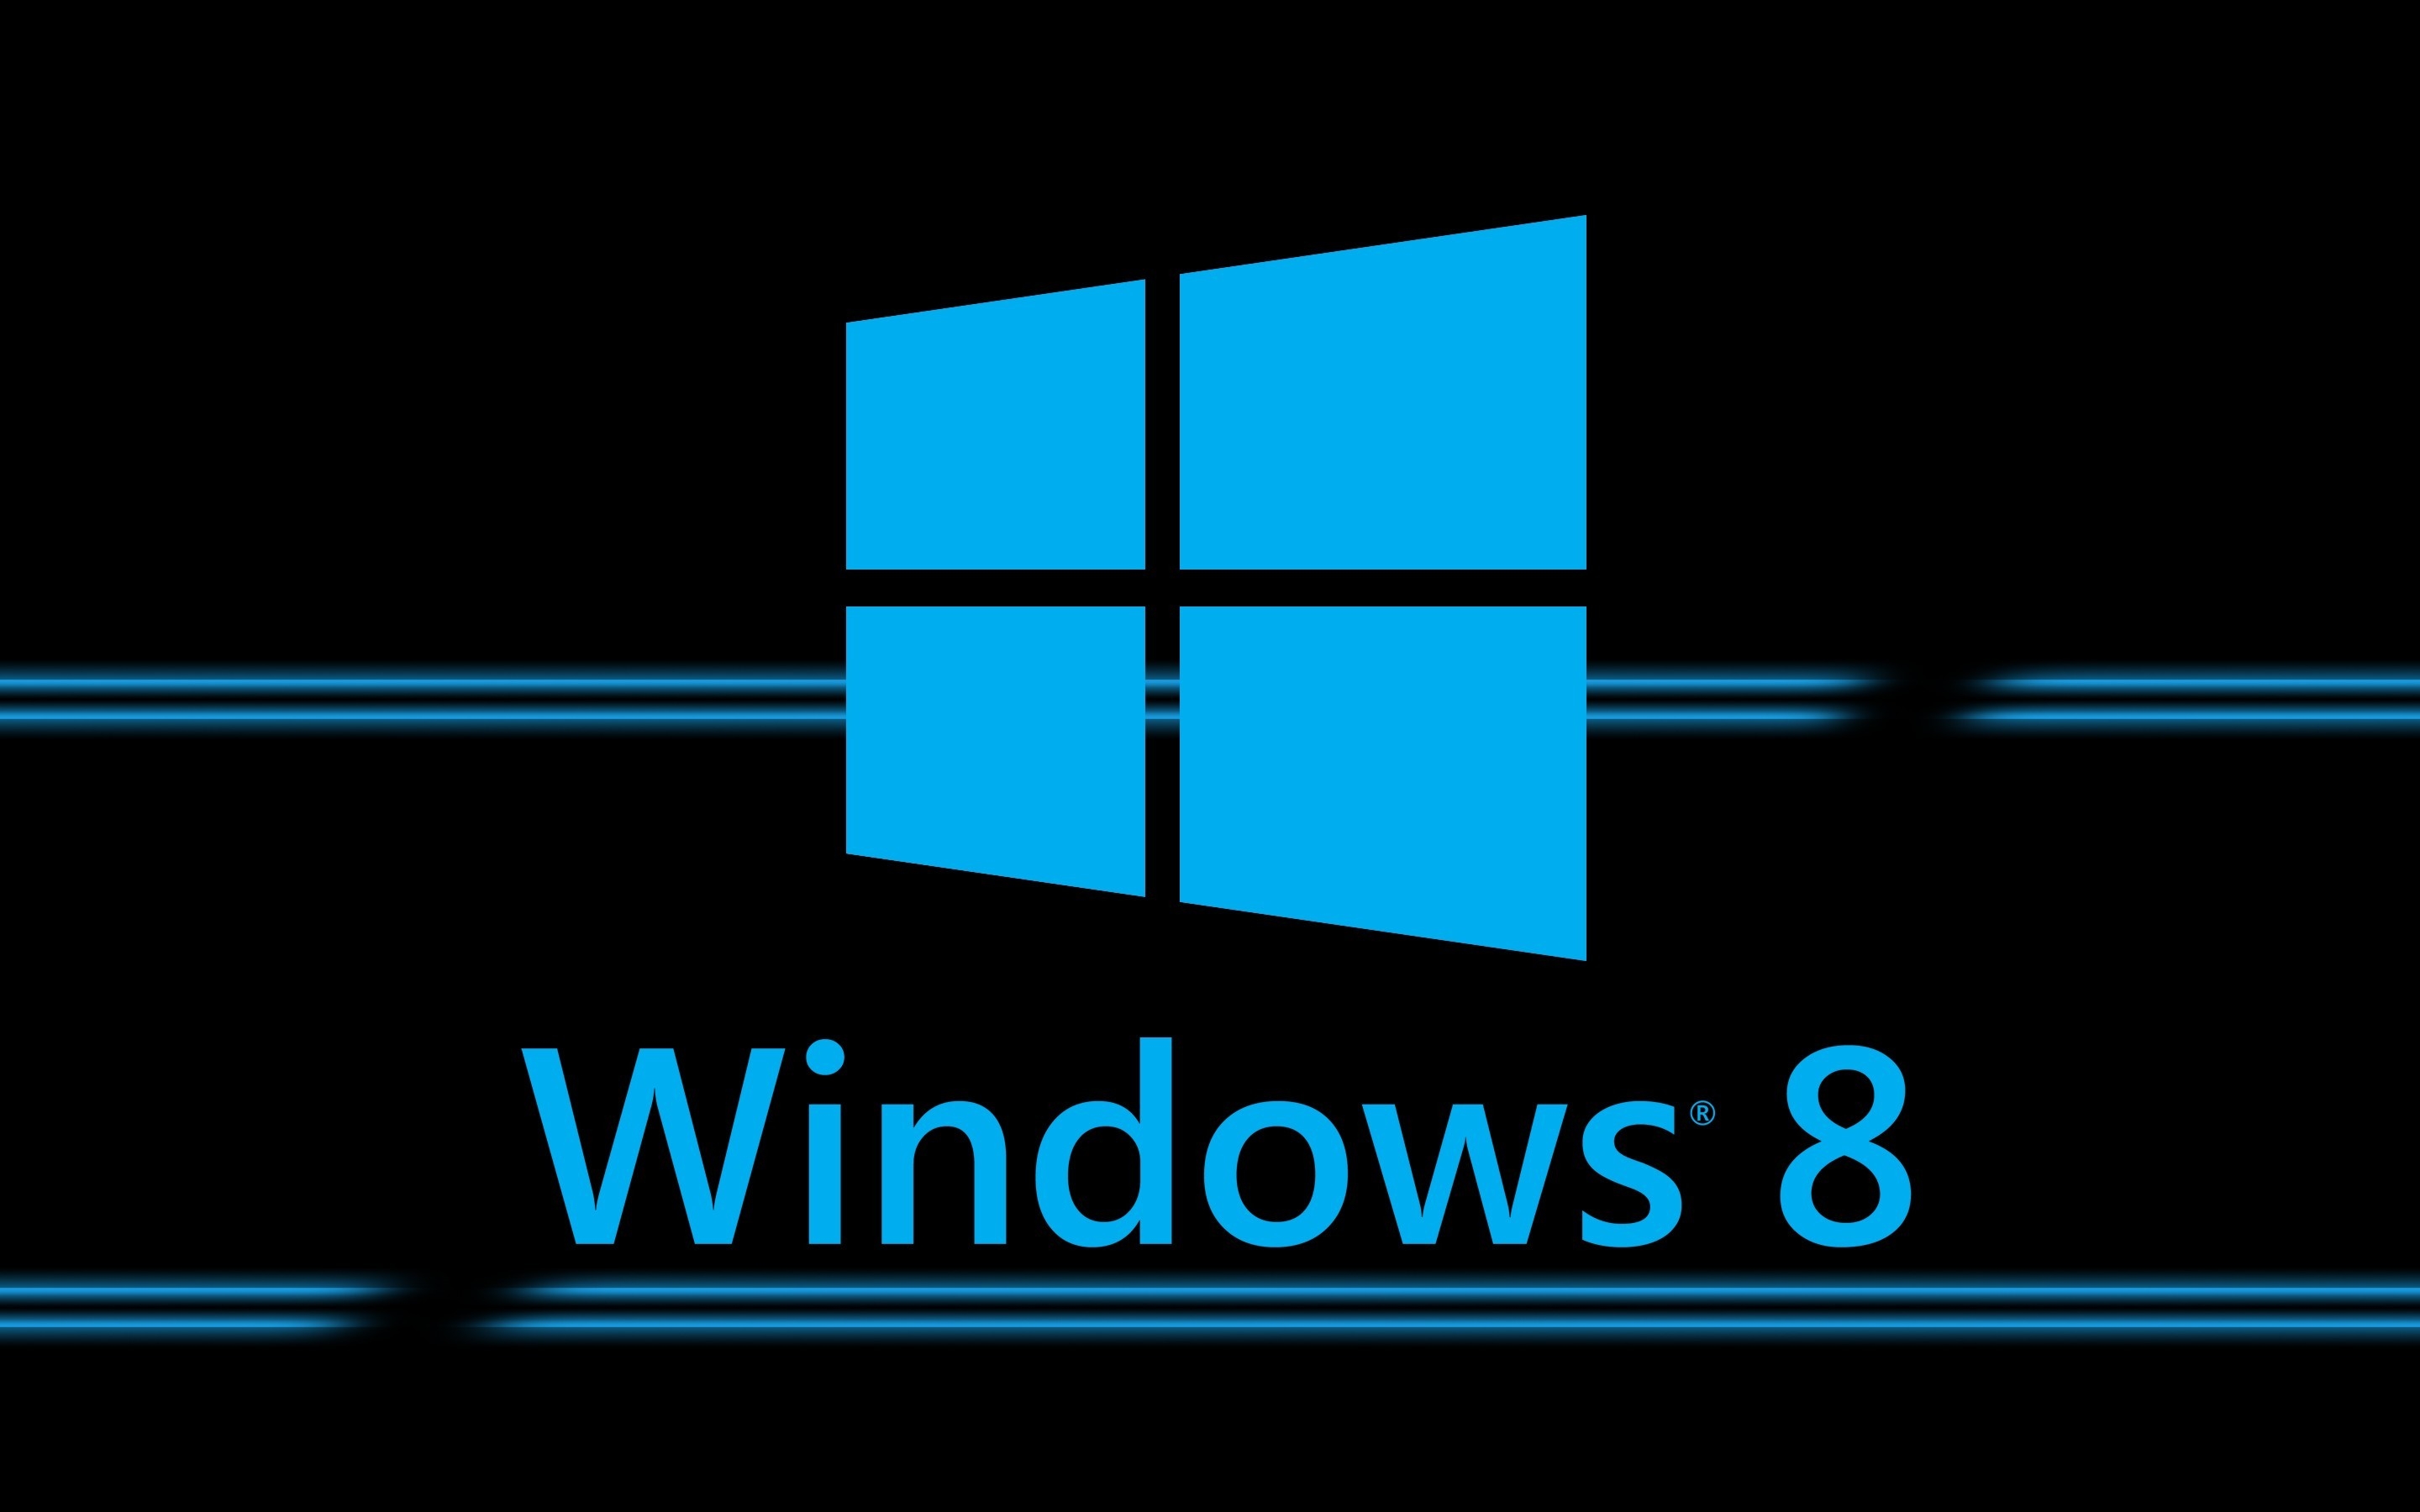 Windows 8 New 2880 x 1800 Retina Display Wallpaper